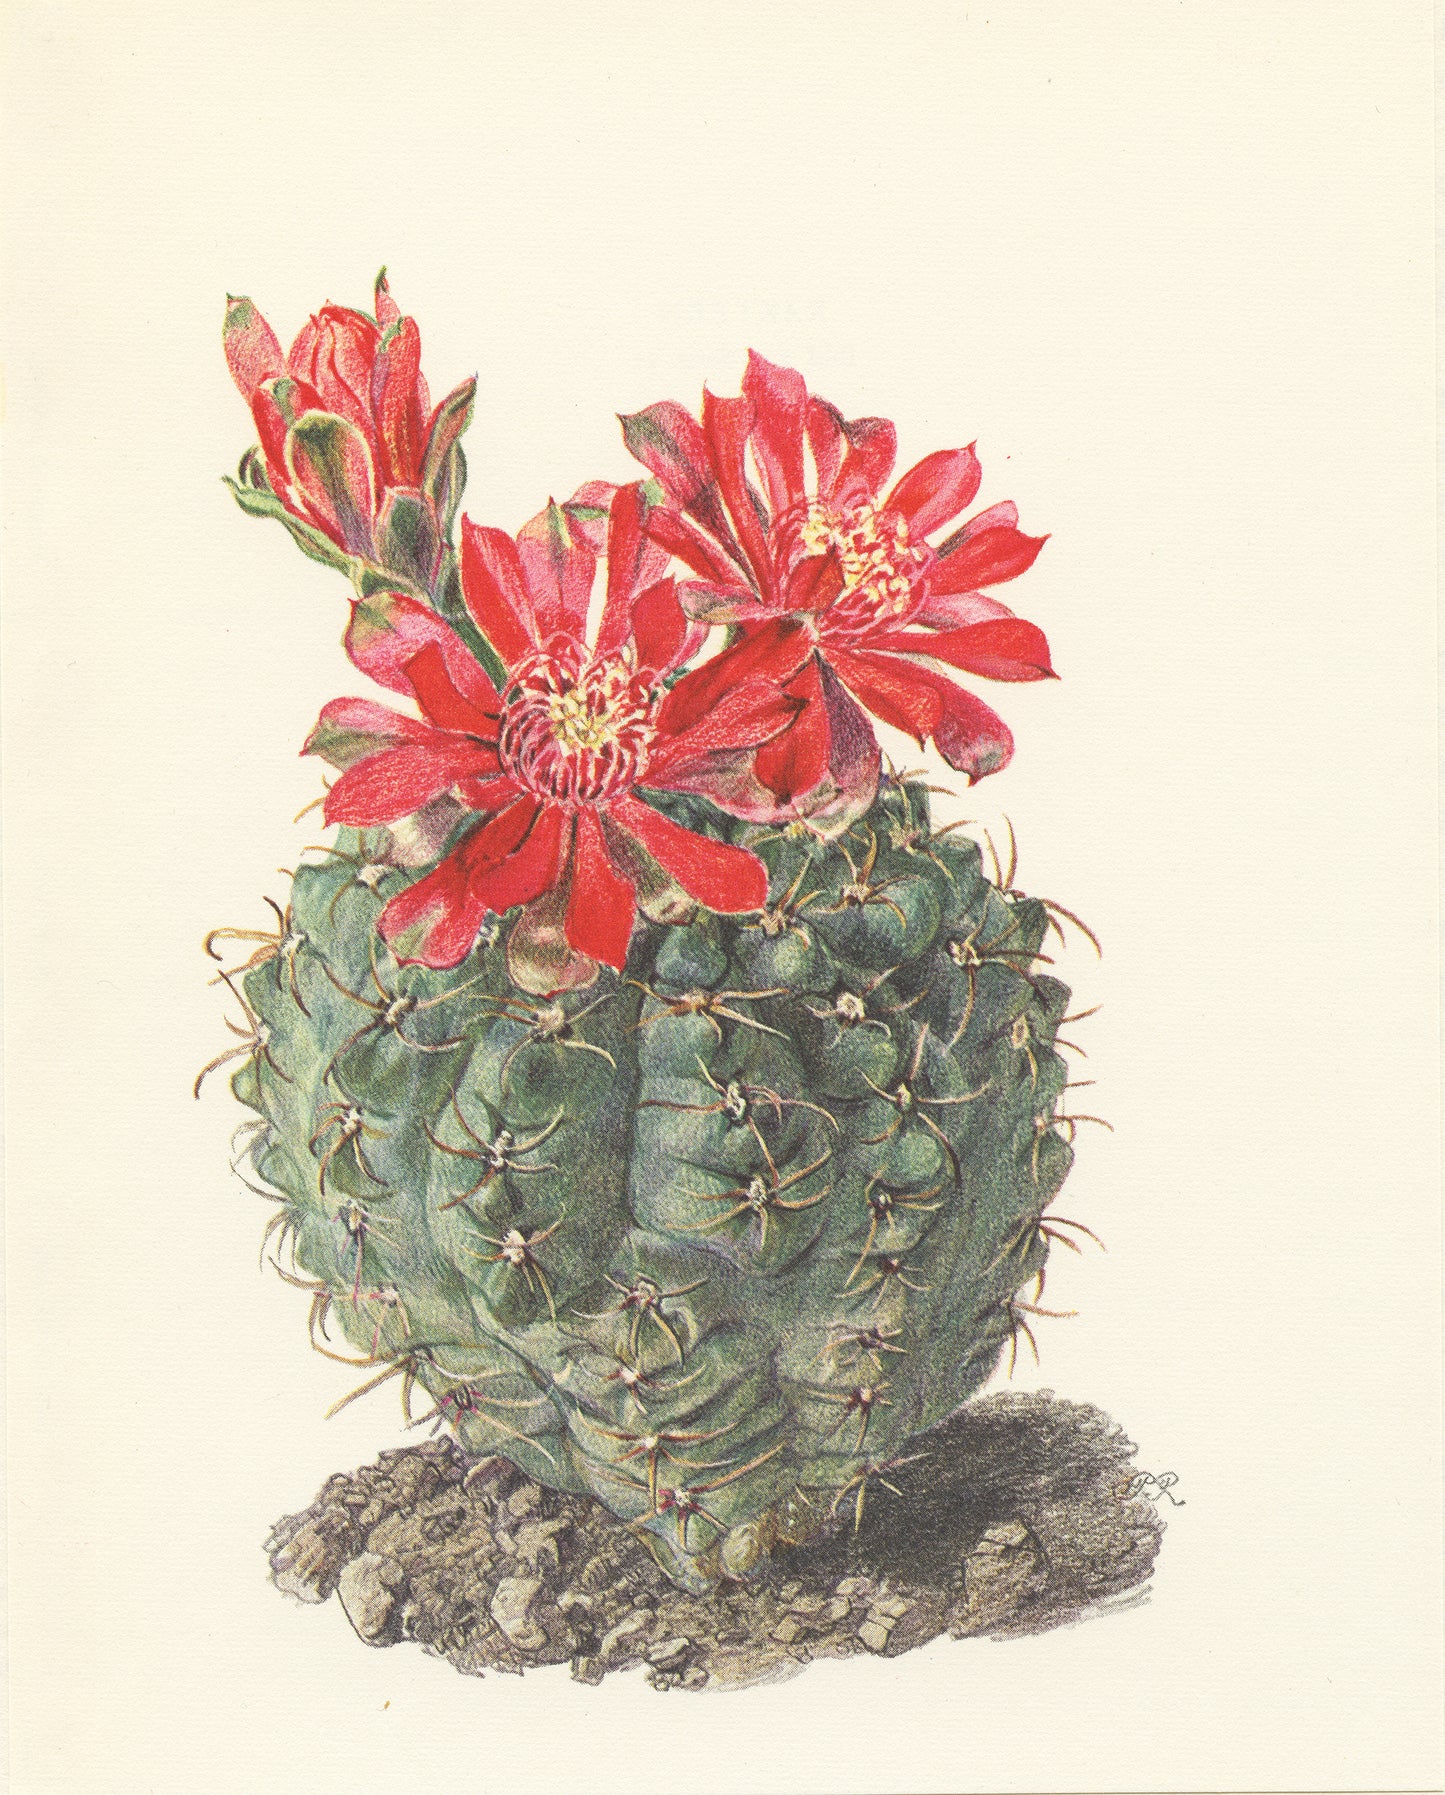 1954 Spider Cactus print Gymnocalycium baldianum